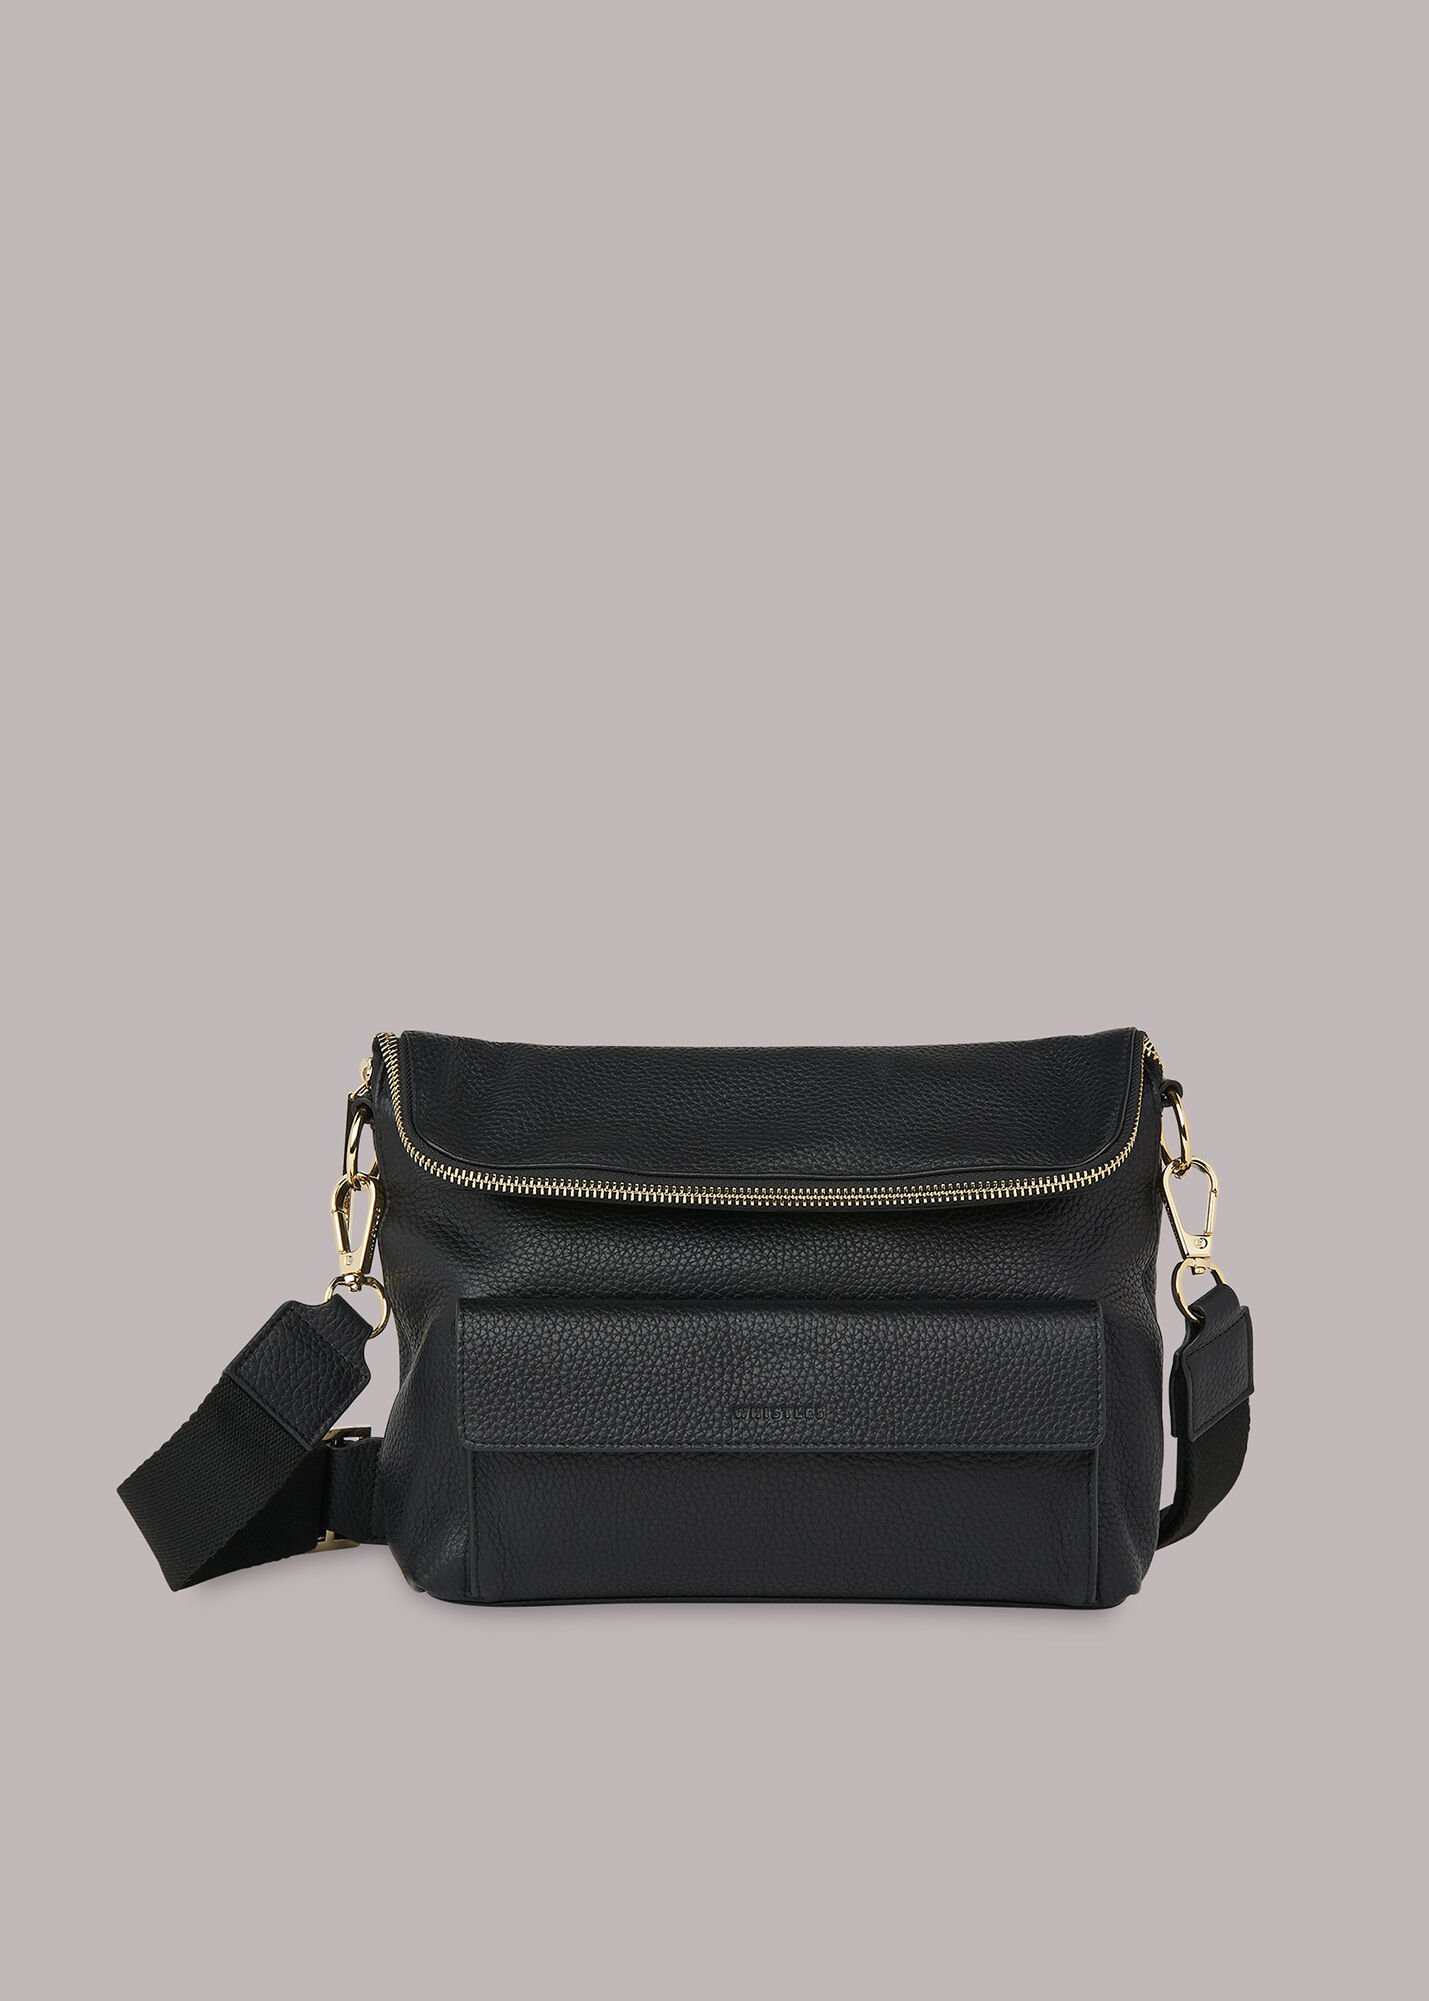 Magnolia Crossbody Handbags | Mercari